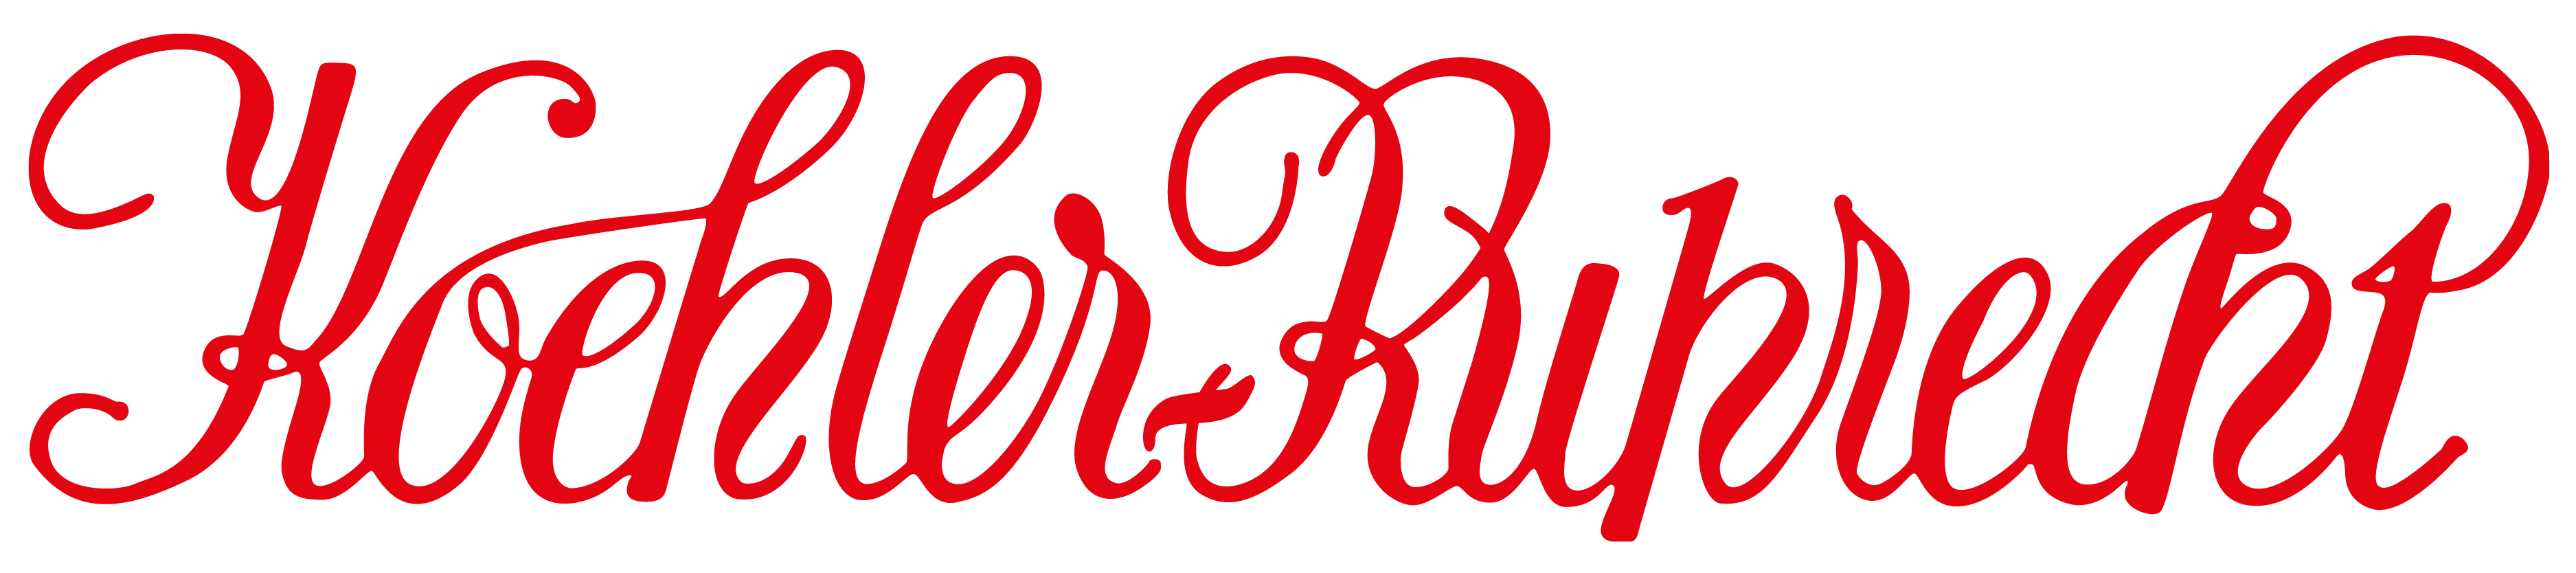 Koehler Ruprecht logo